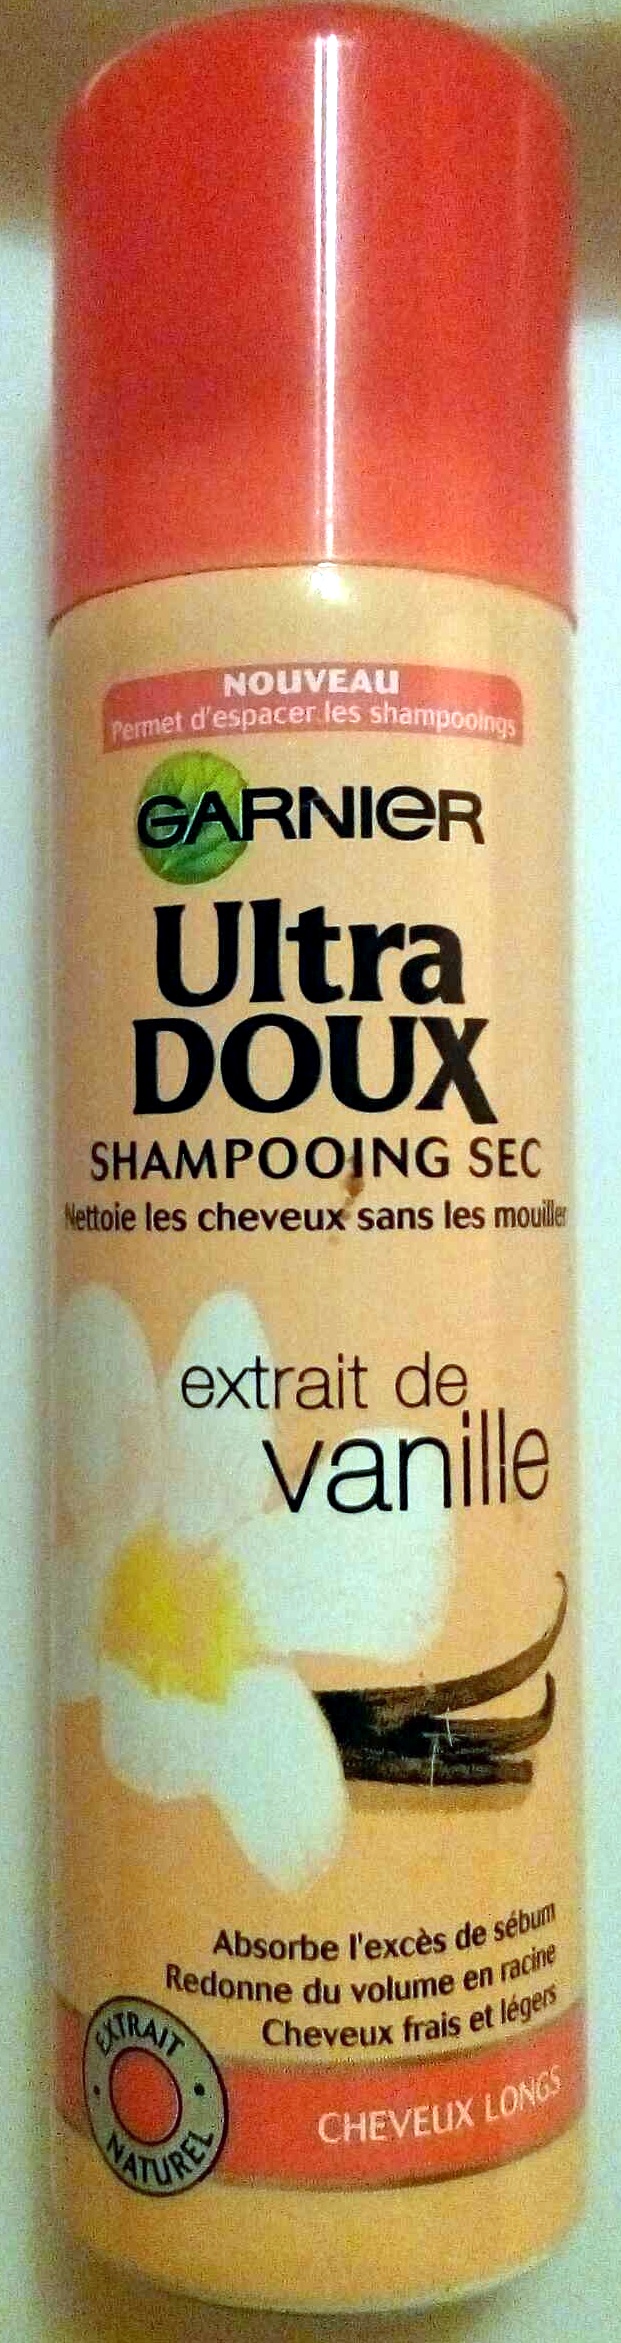 Shampooing sec extrait de vanille - Produit - fr